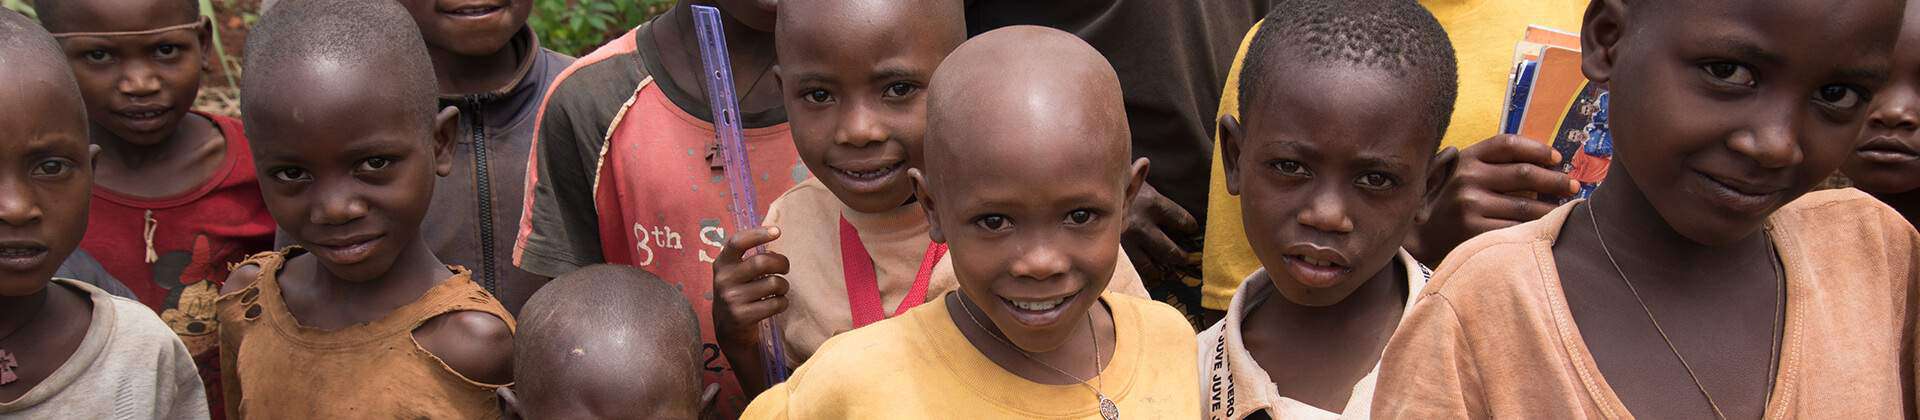 Burundi - All God's Children